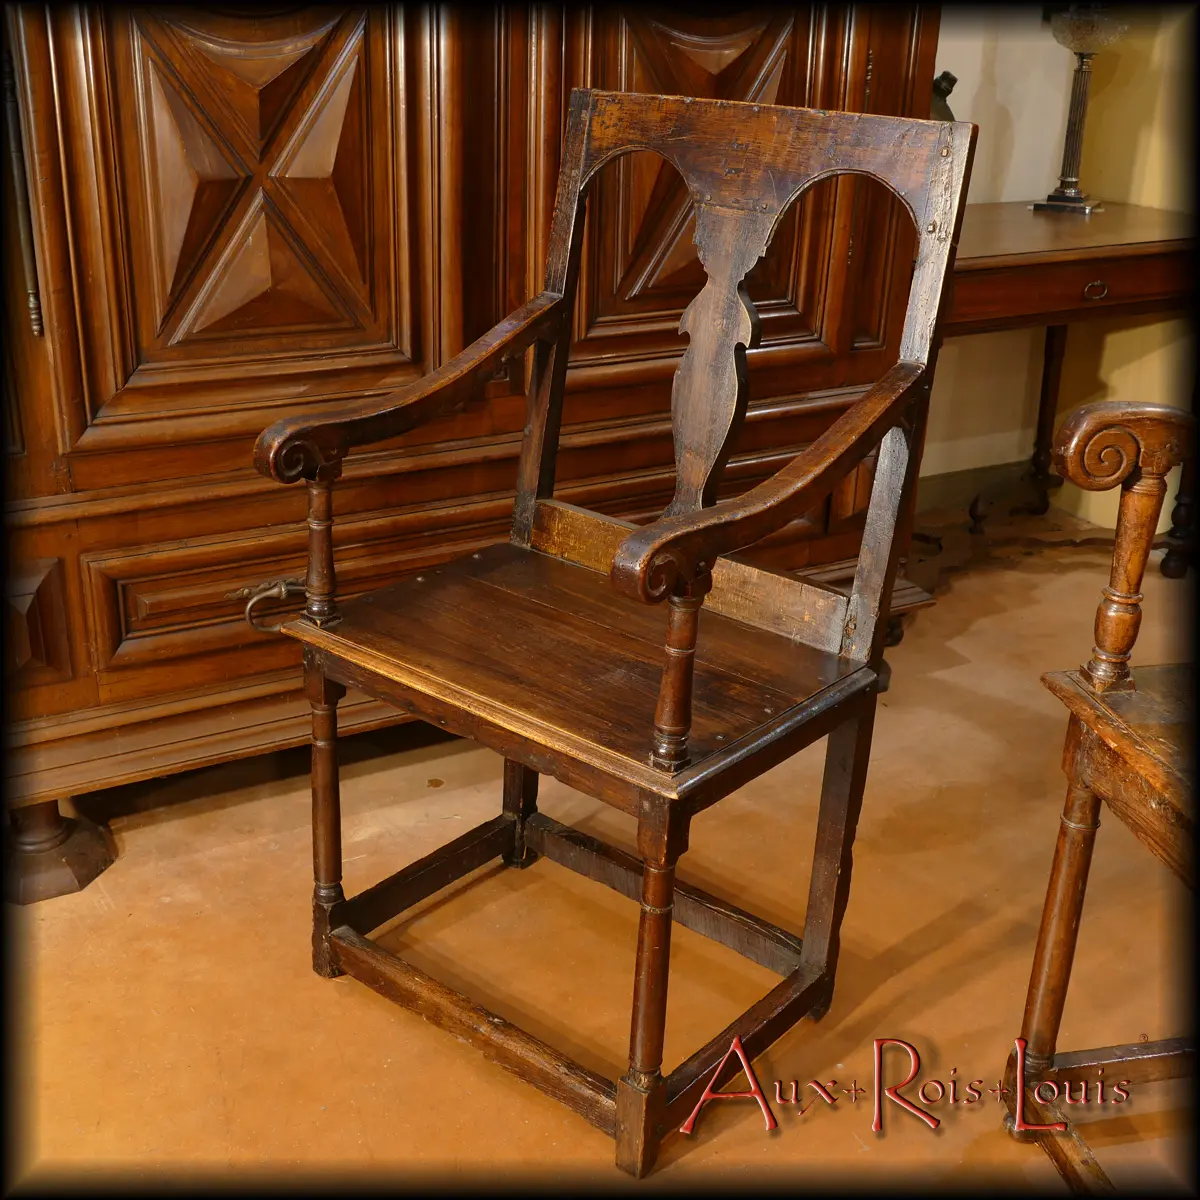 La plus petite de ces deux chaises à bras Louis XIII accueillait l’épouse du maître de céans. On peut les imaginer tous deux assis auprès d’une grande cheminée et profitant à la veillée d’une belle flambée réconfortante.